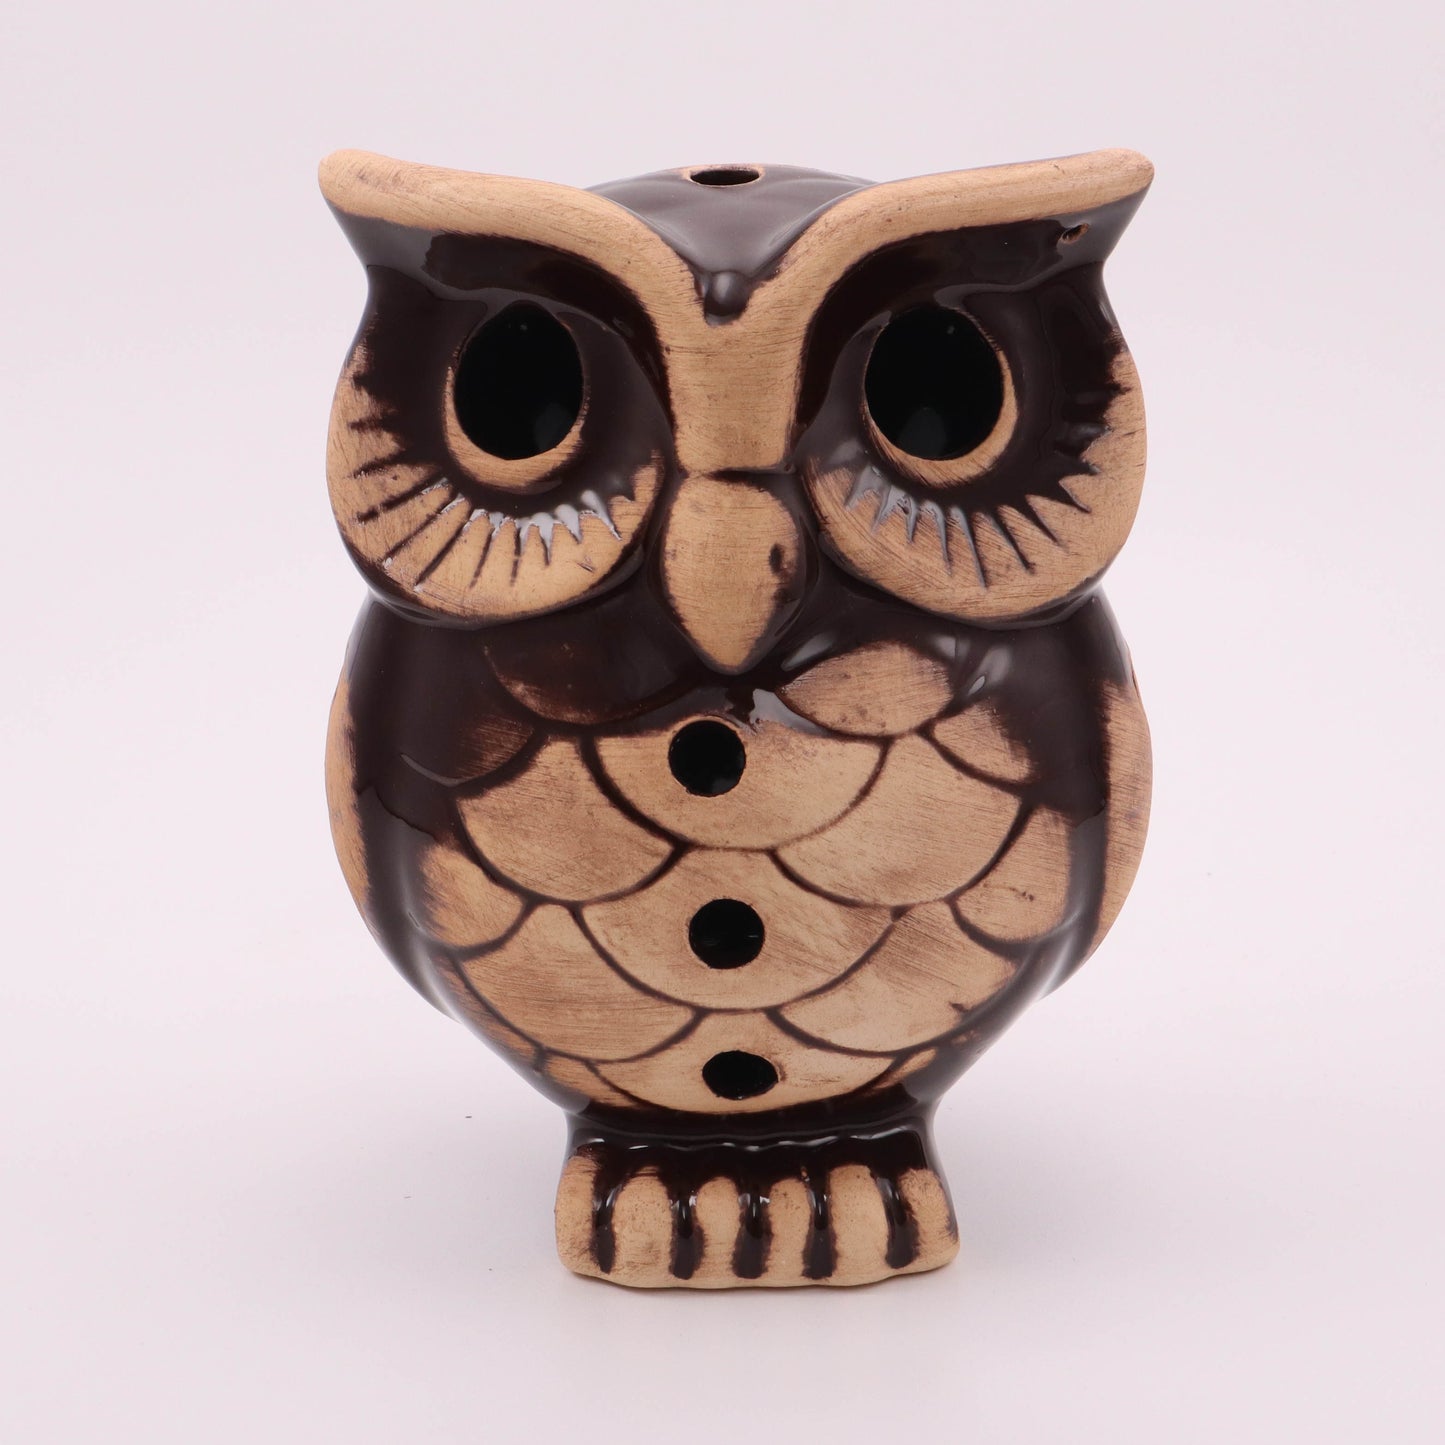 7"x9" Unglazed Owl Figurine. Pattern: Extra